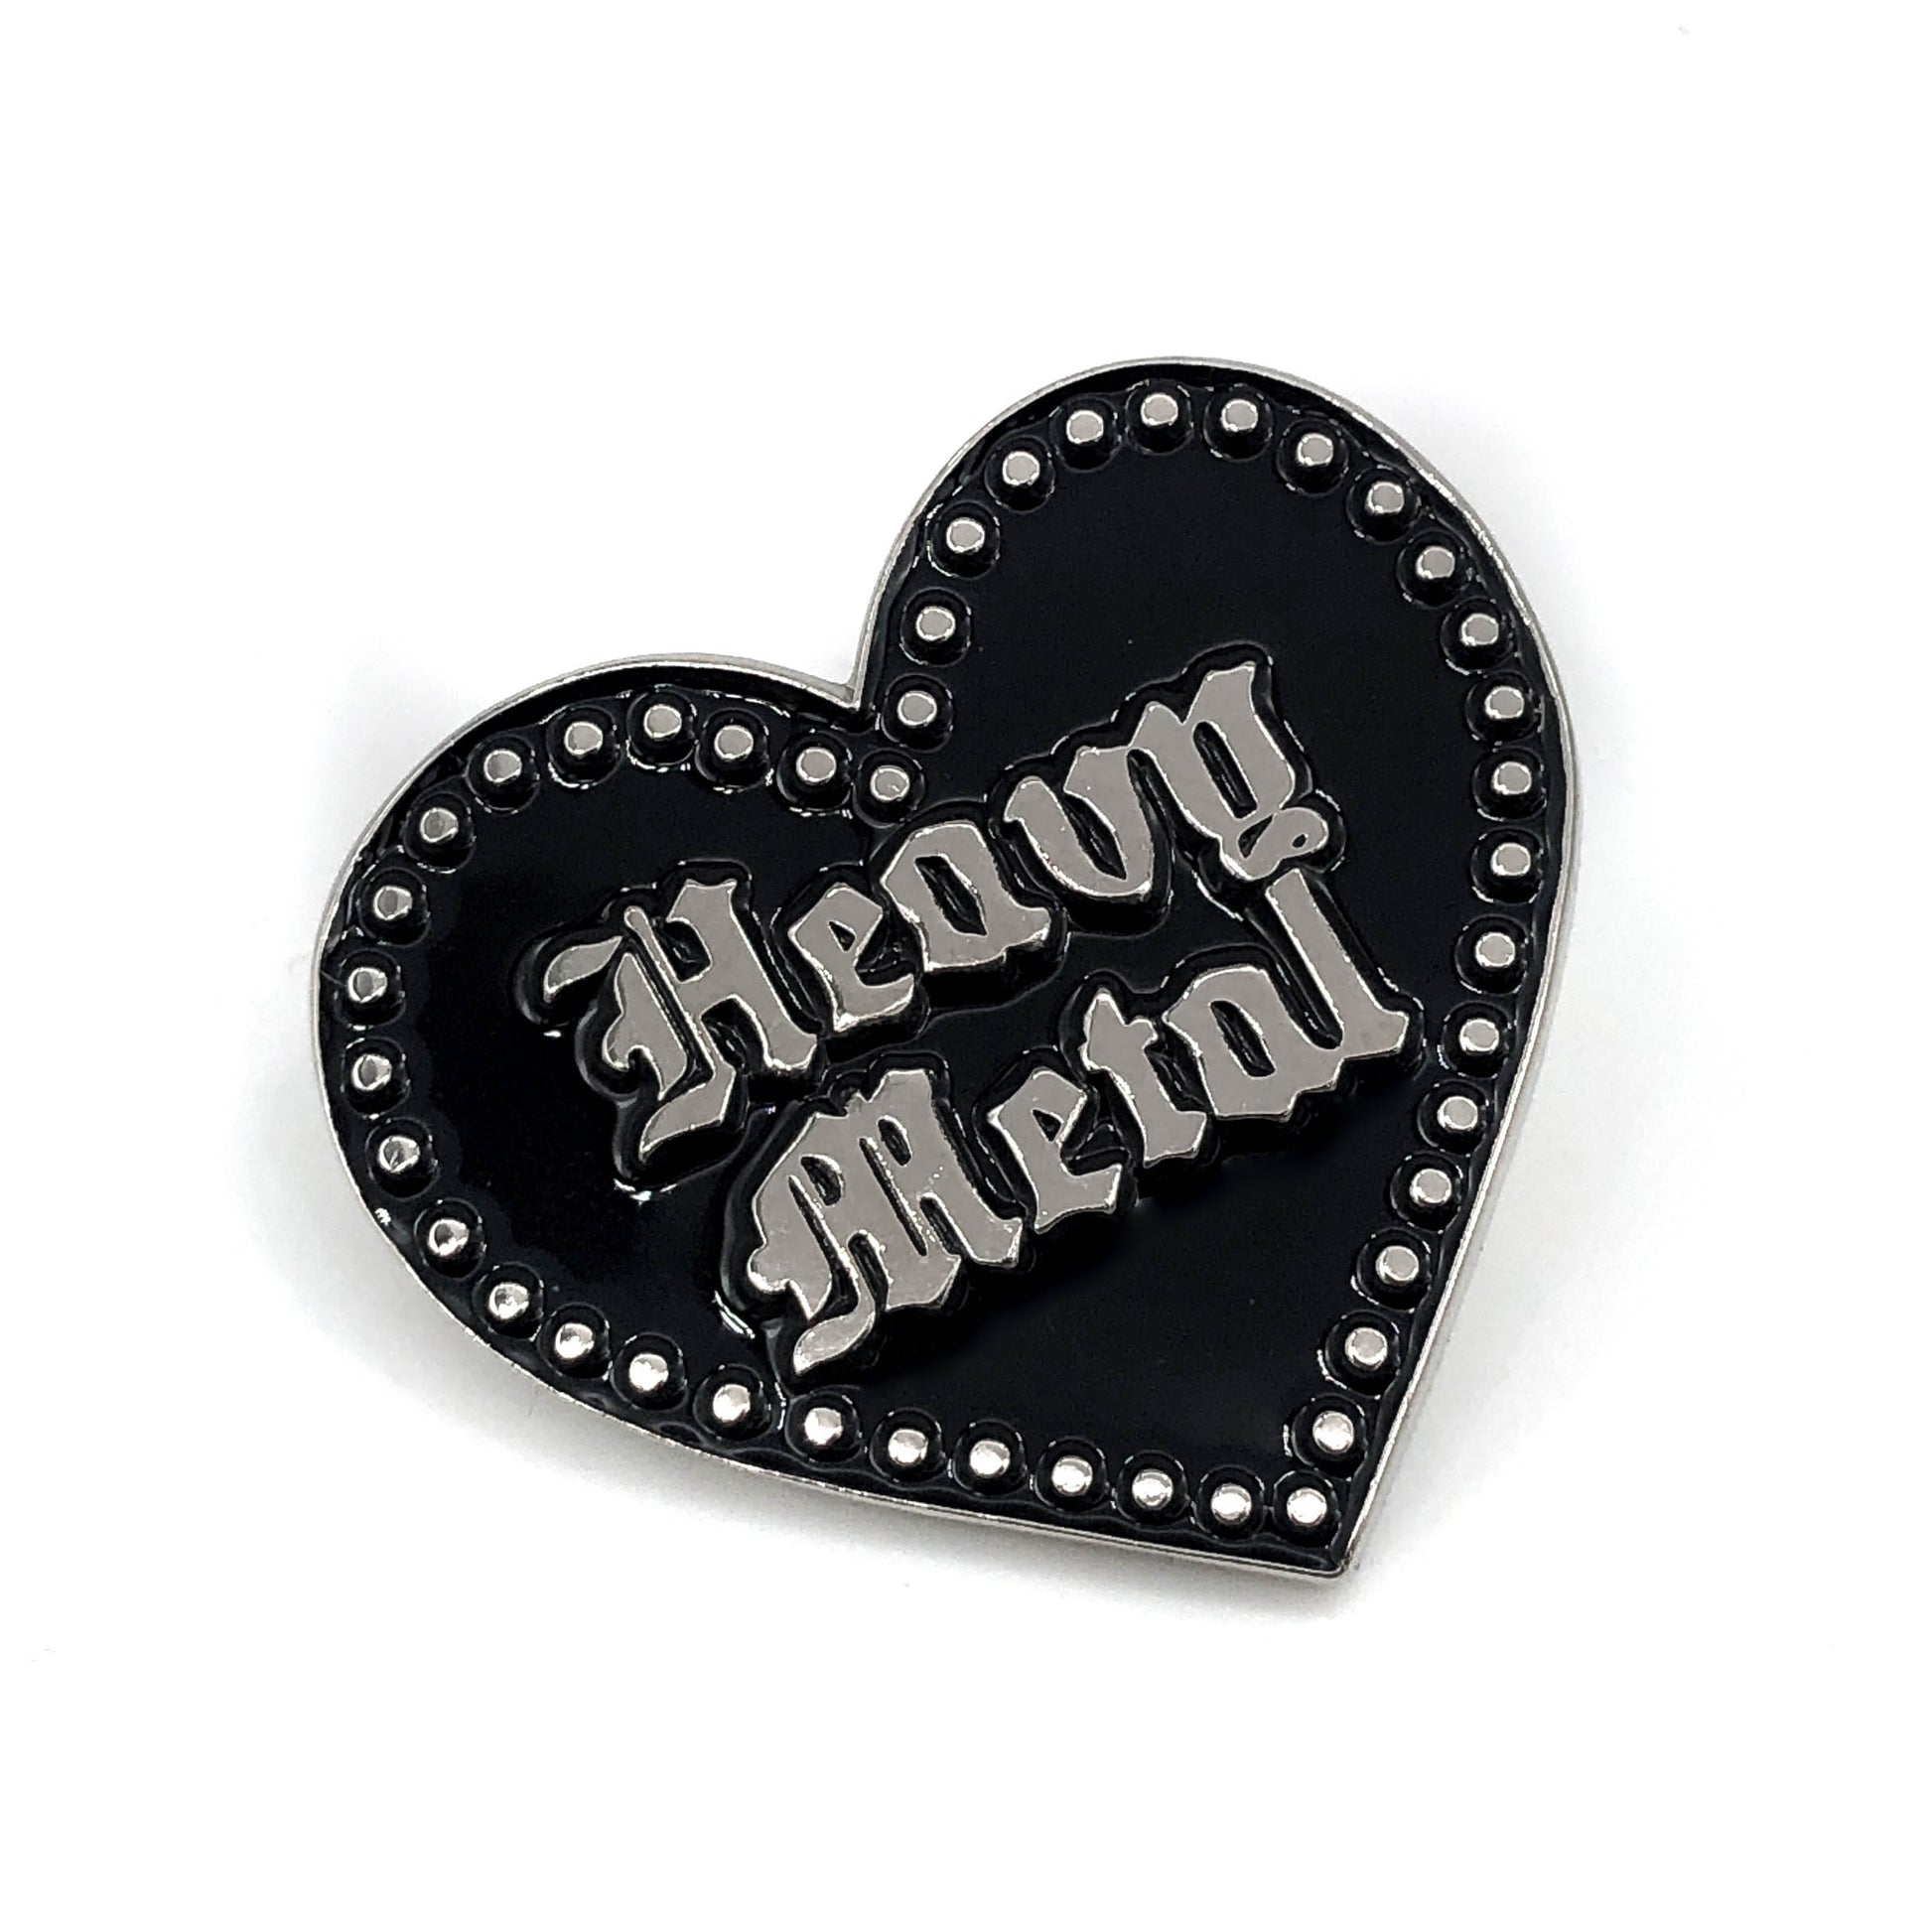 Heavy Metal Pin mysticumluna2021